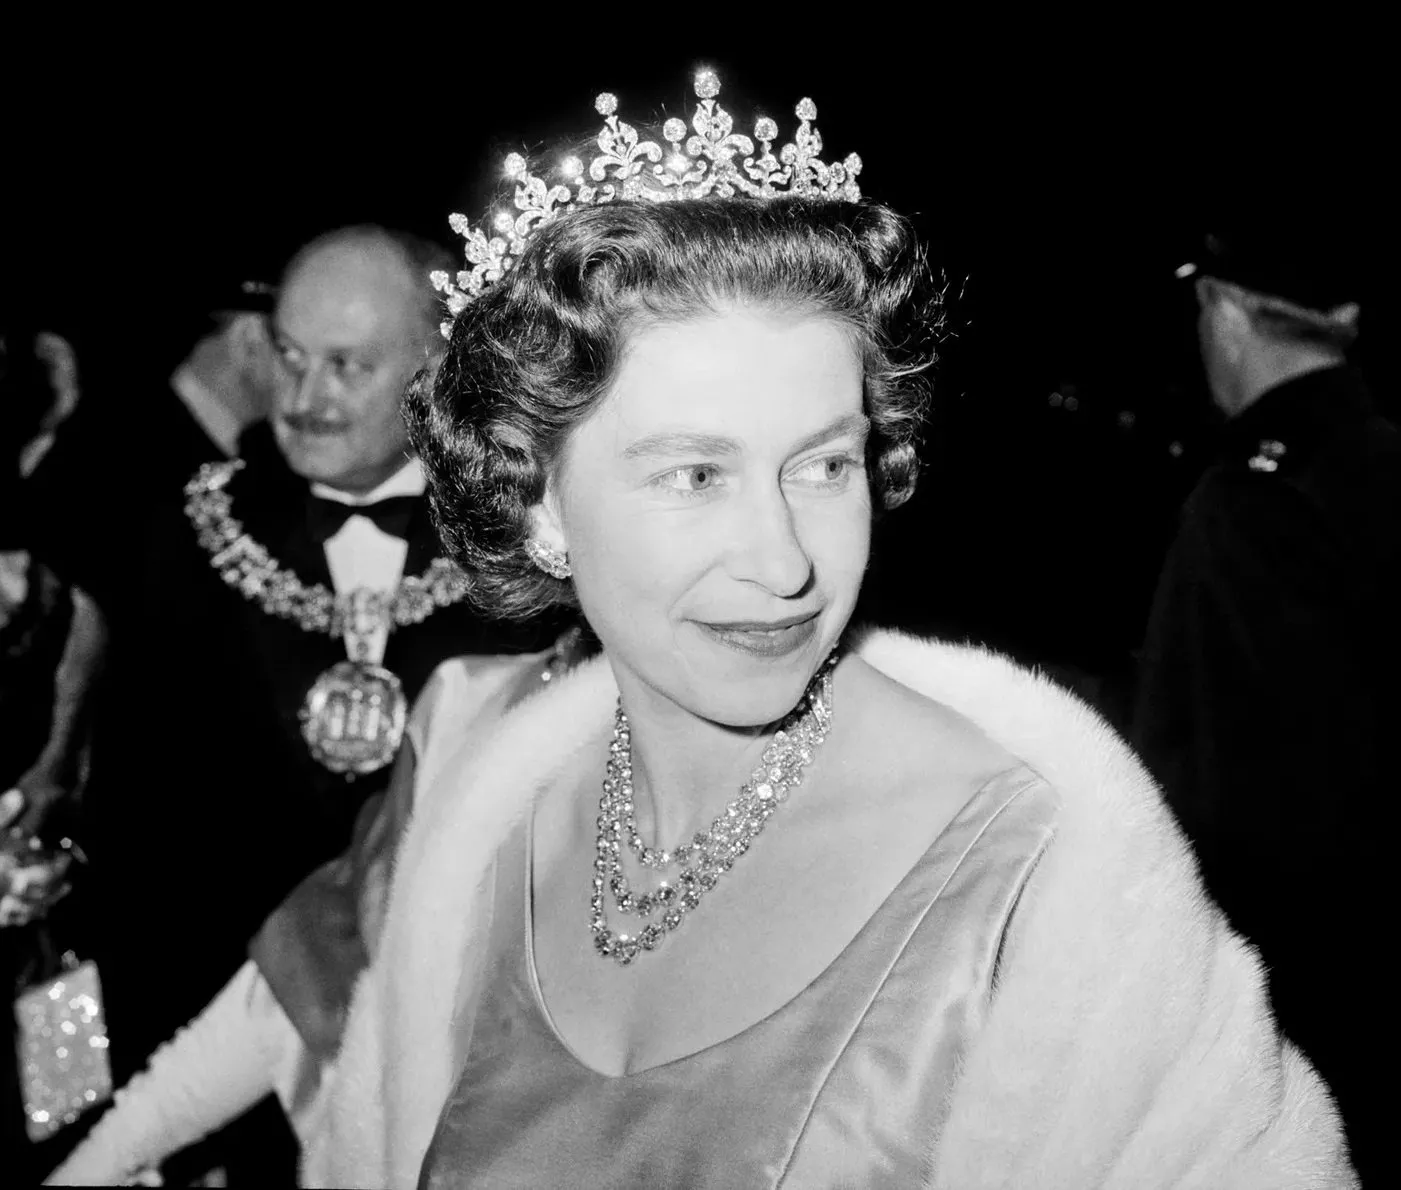 تيجان الملكة اليزابيث: صور وتاريخ أشهر القطع التي اعتمدتها